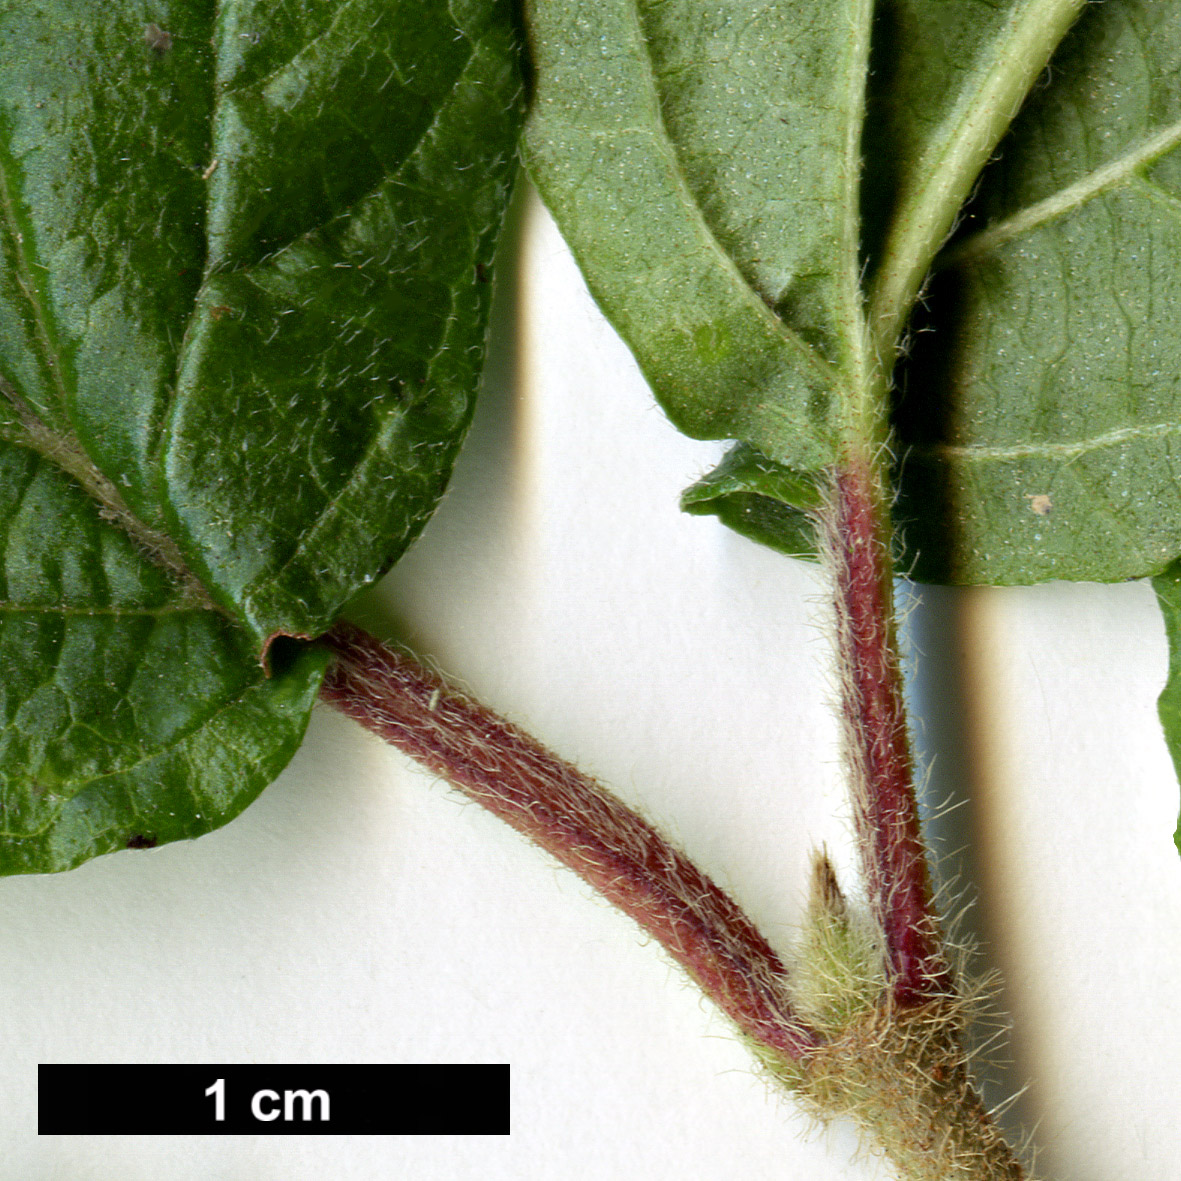 High resolution image: Family: Adoxaceae - Genus: Viburnum - Taxon: dilatatum